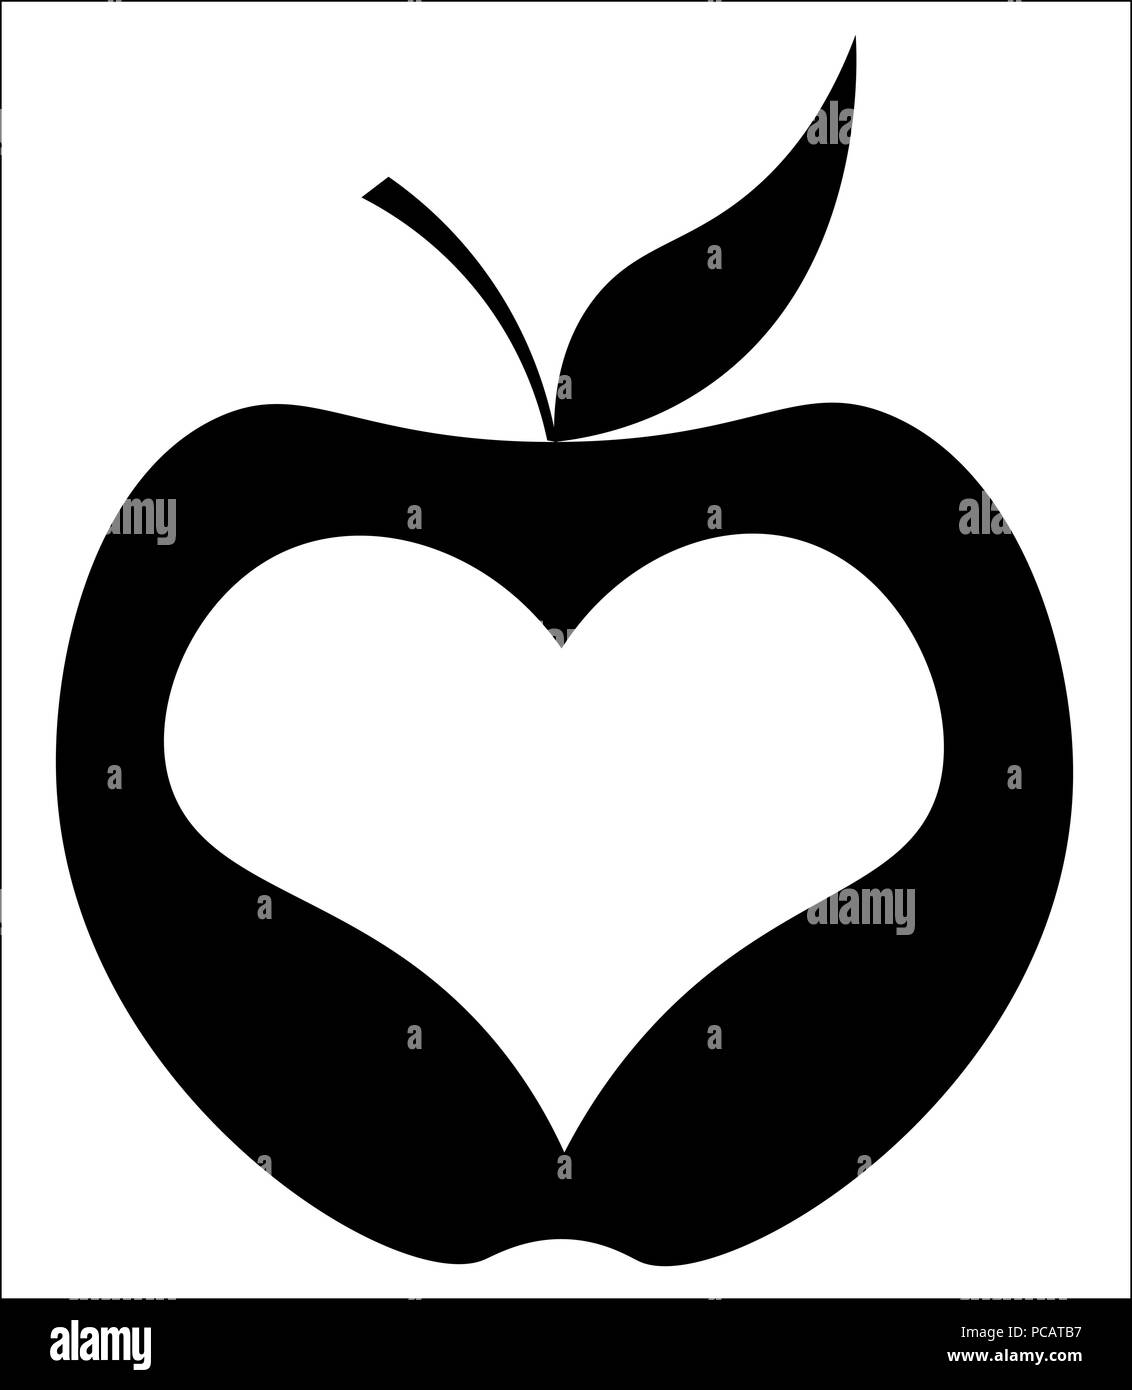 Avec apple dans le centre cardiaque, new york logo minimaliste Illustration de Vecteur